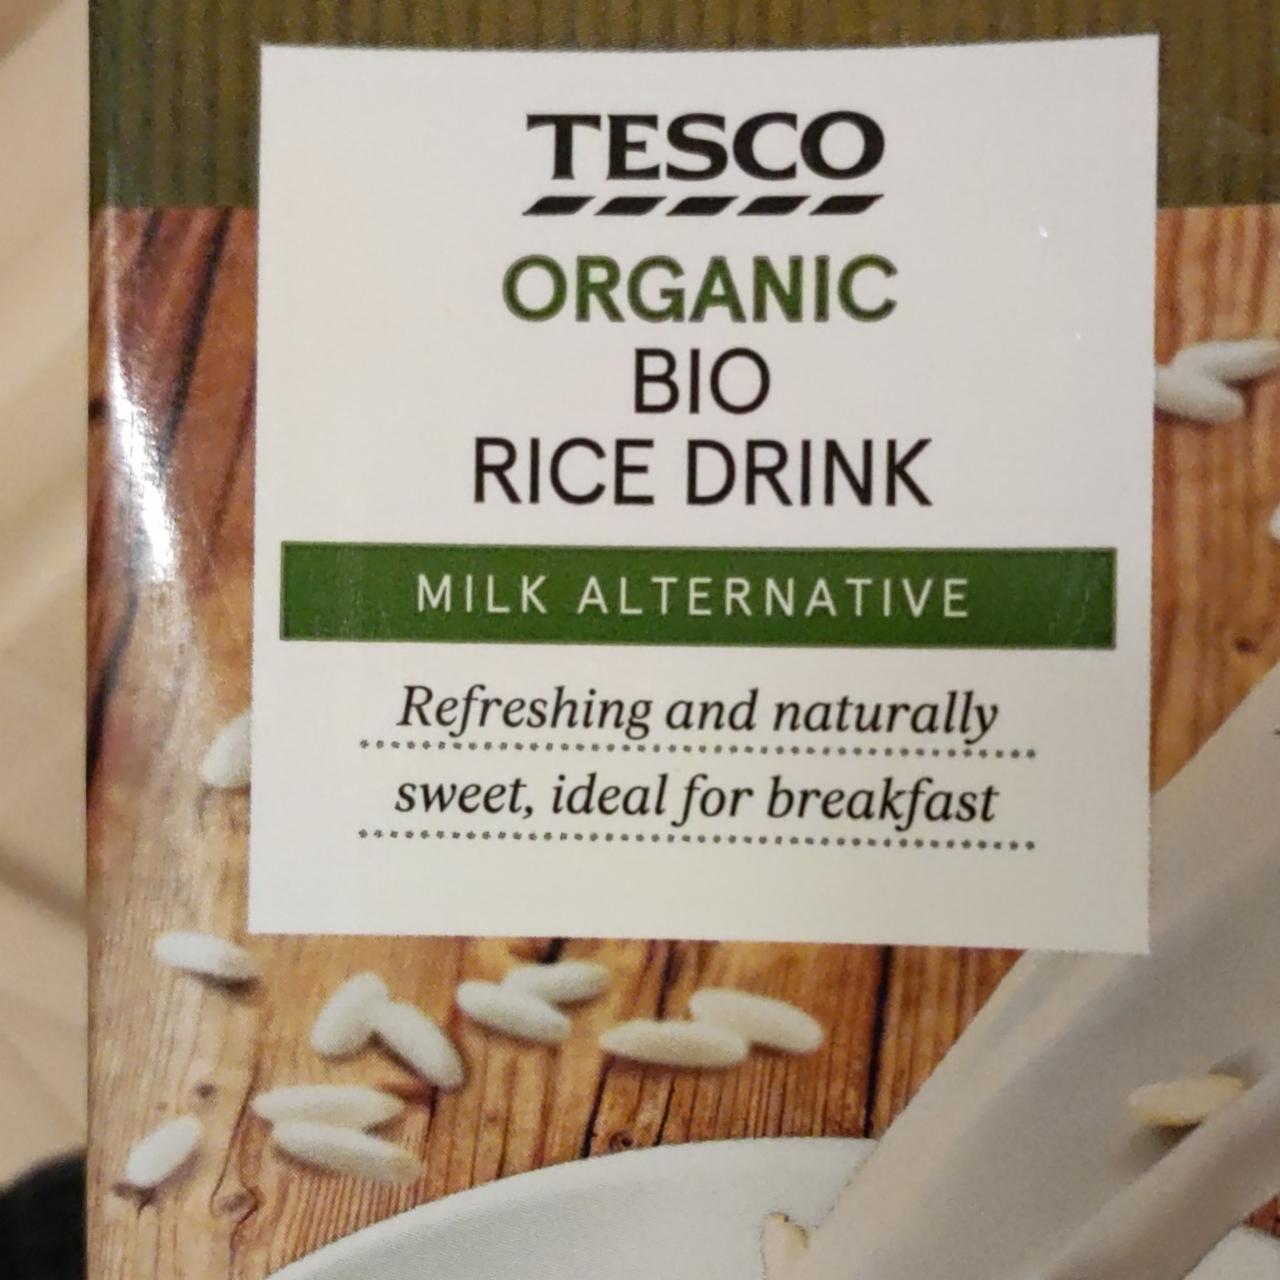 Képek - Organic bio rice drink Tesco